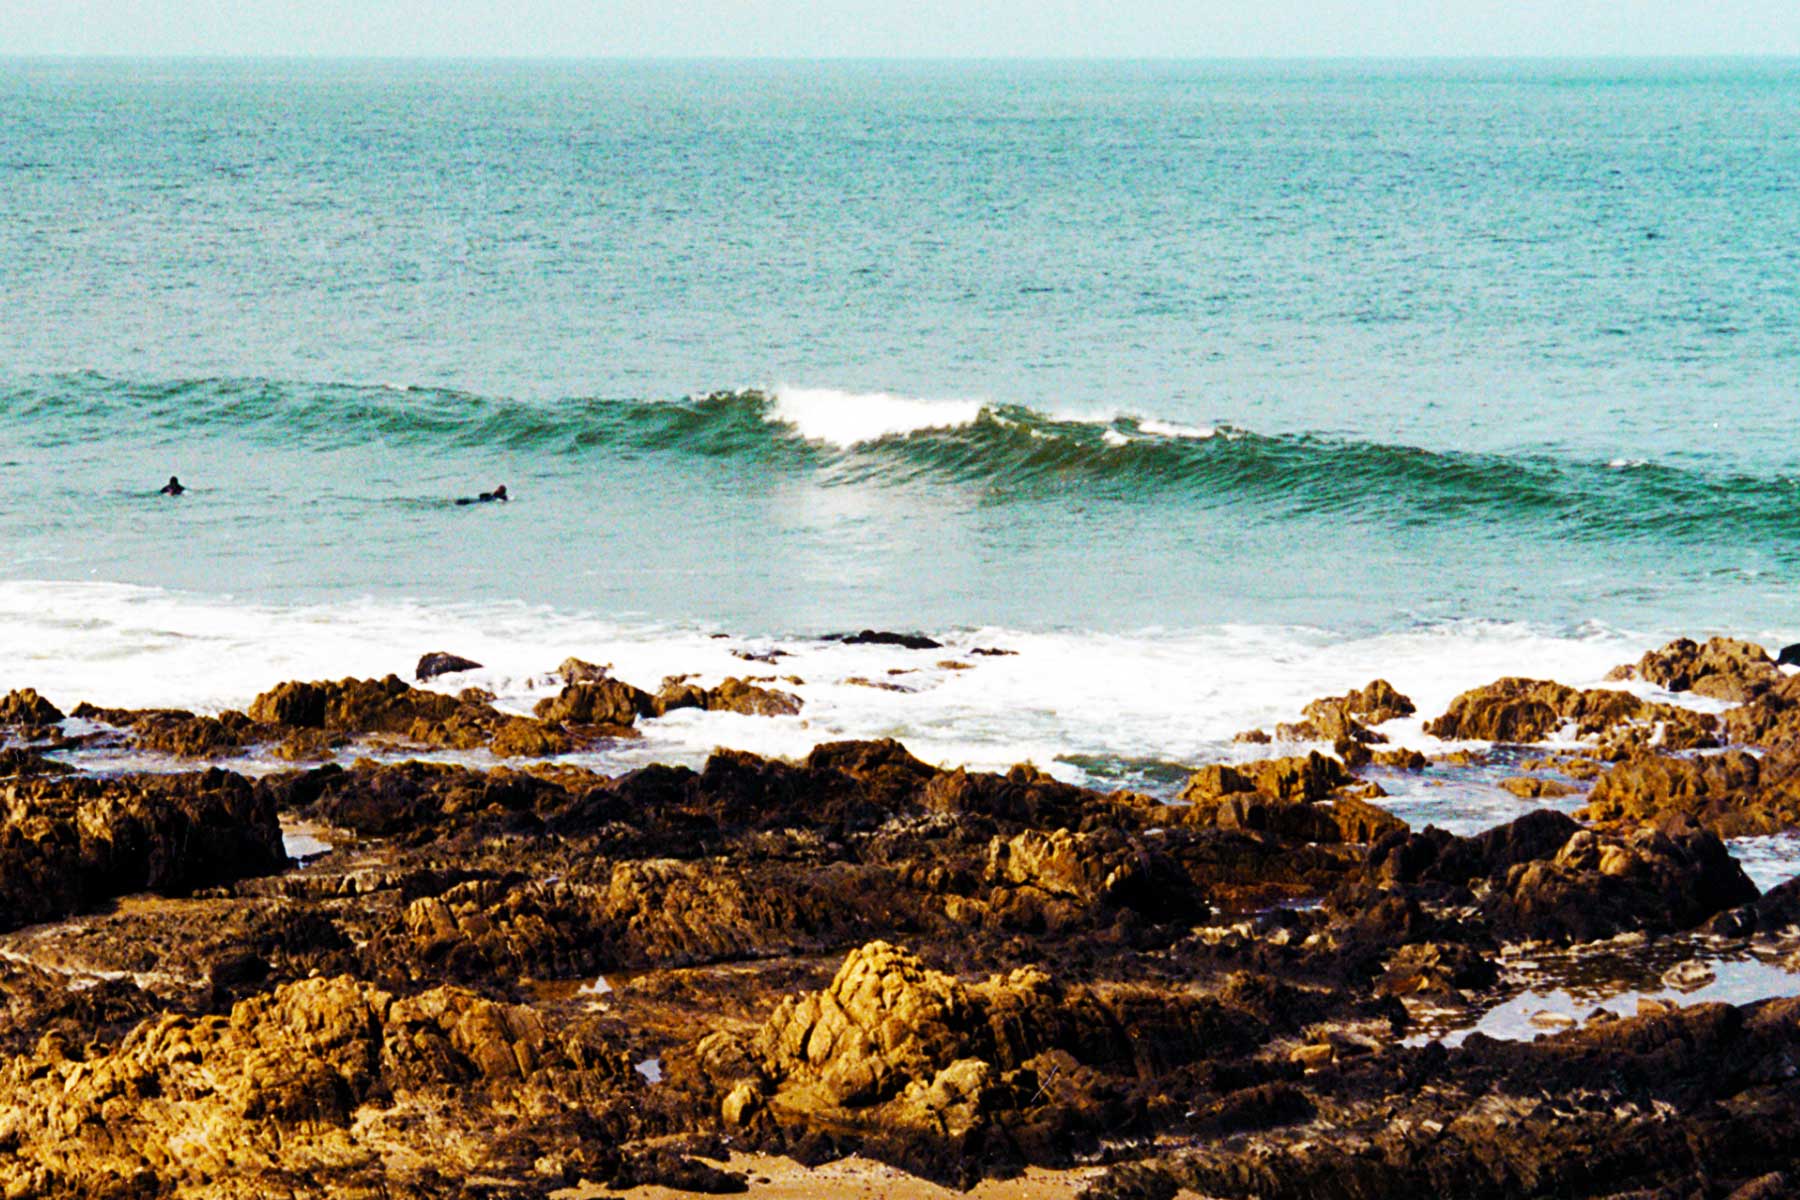 Surfing near Punta del Este, Uruguay | Surf Doctor Steven Andrew Martin | Surfer's Journal